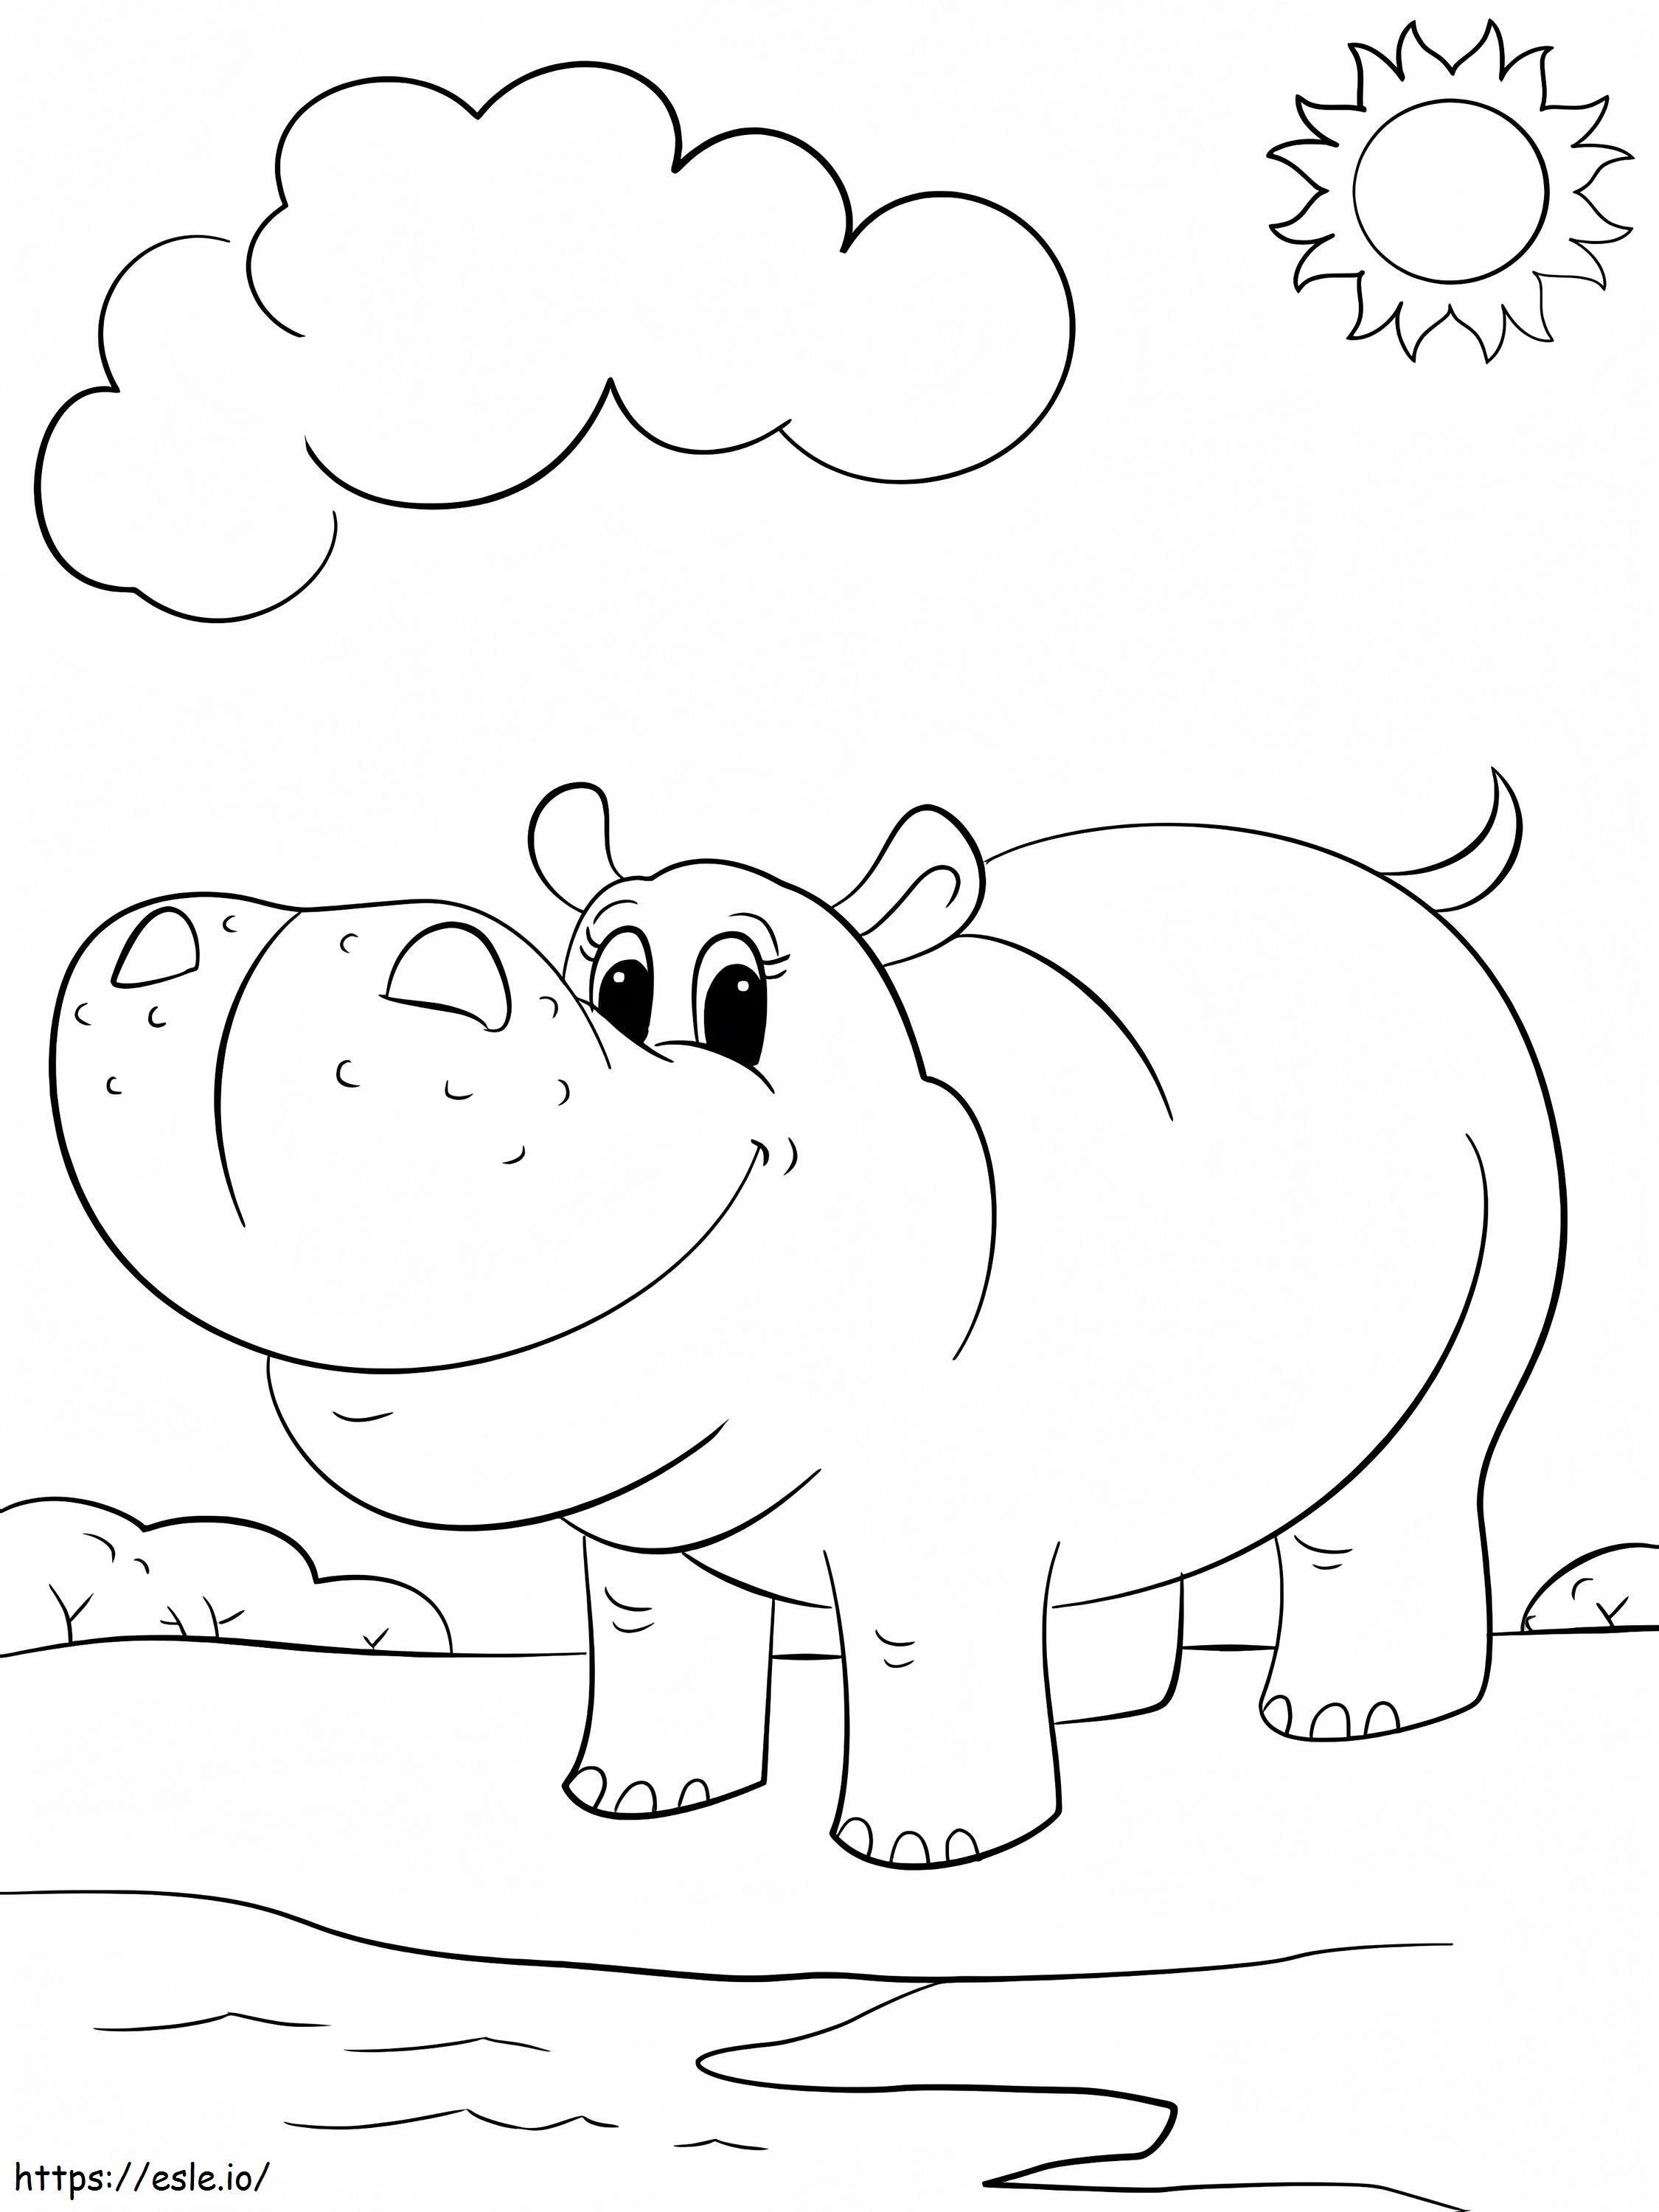 hipopótamo en la playa para colorear